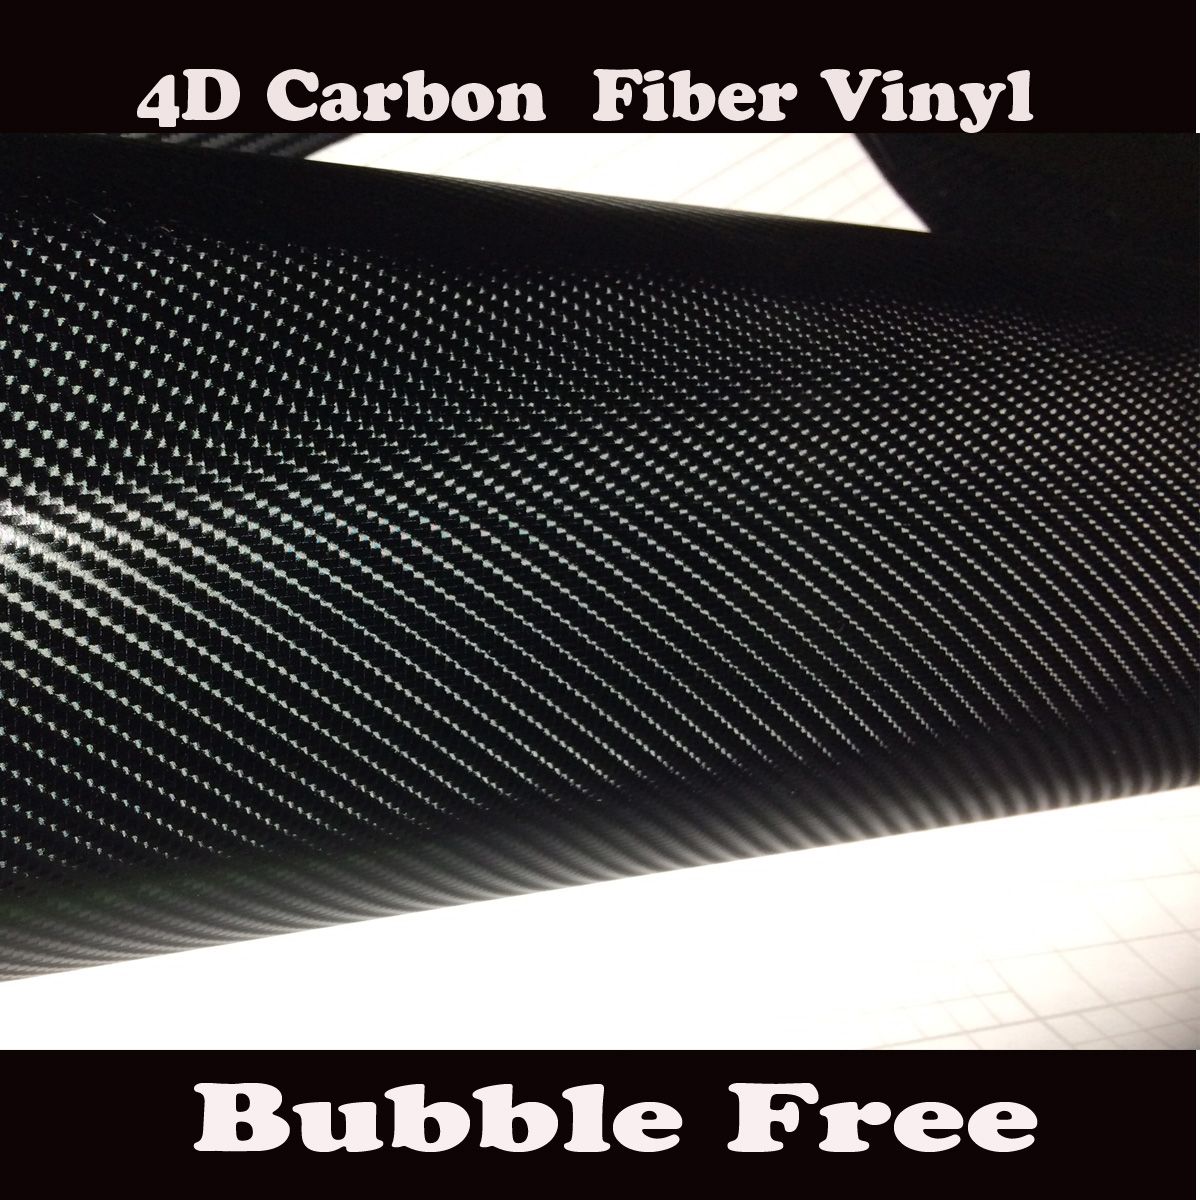 Black 4D Carbon Fibre Vinyl Wrap Film Bubble Air Free 